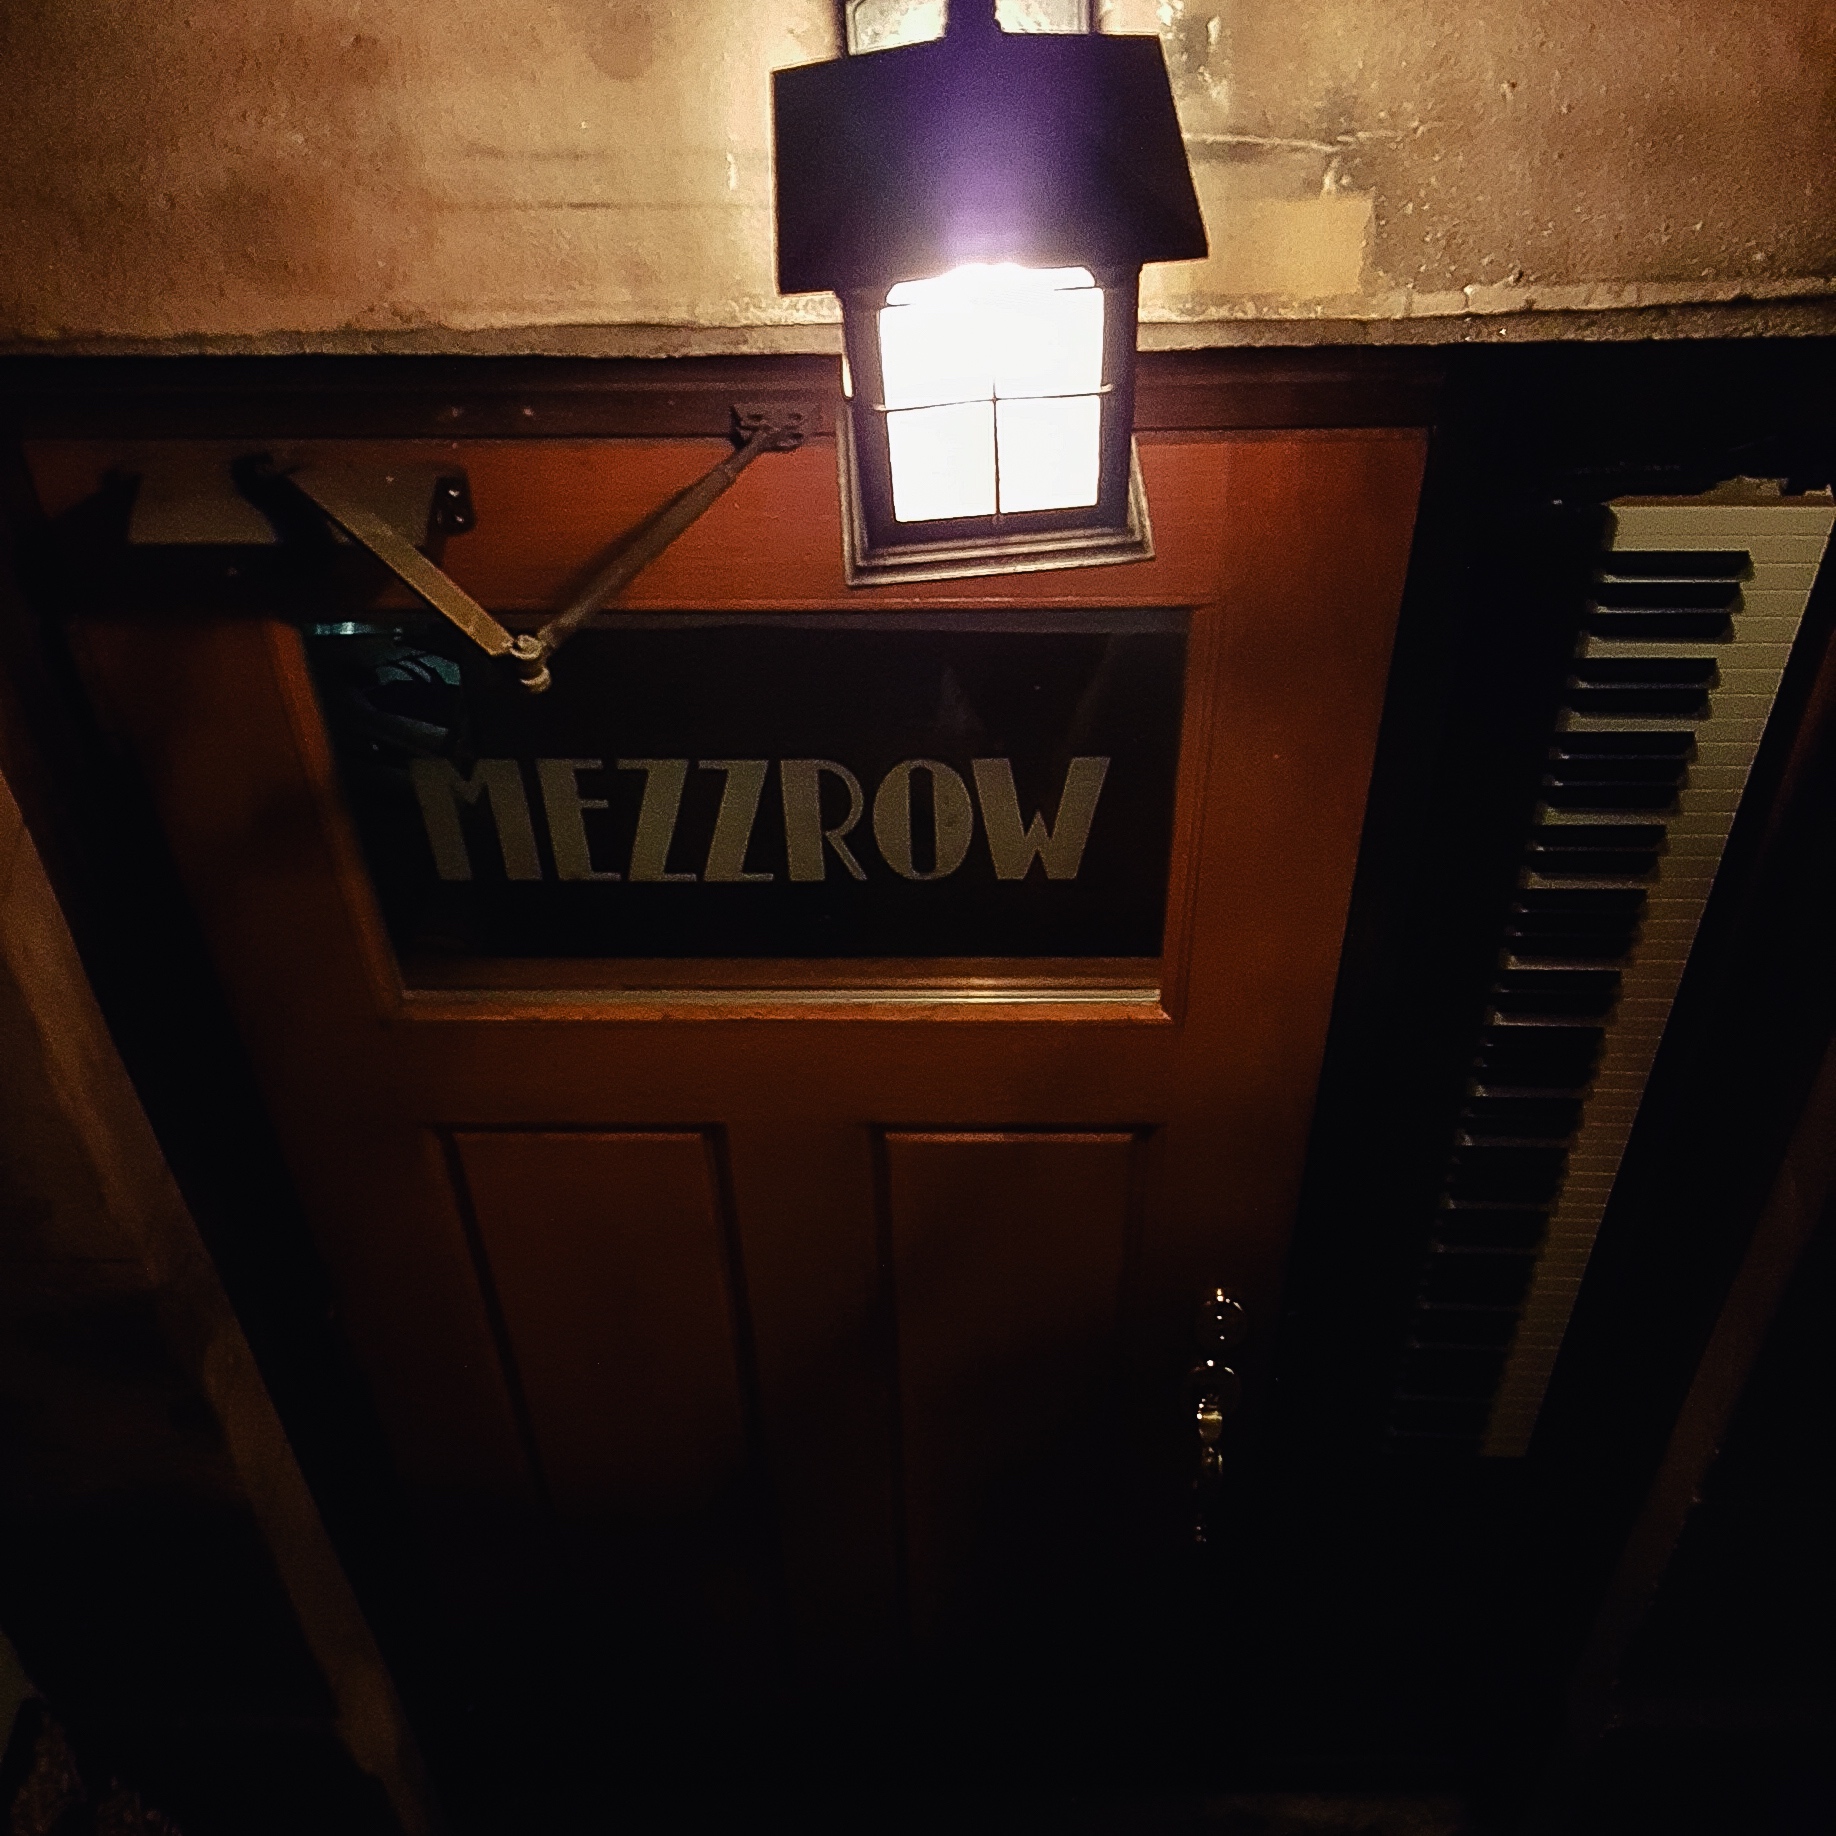 Mezzrow Jazz Club